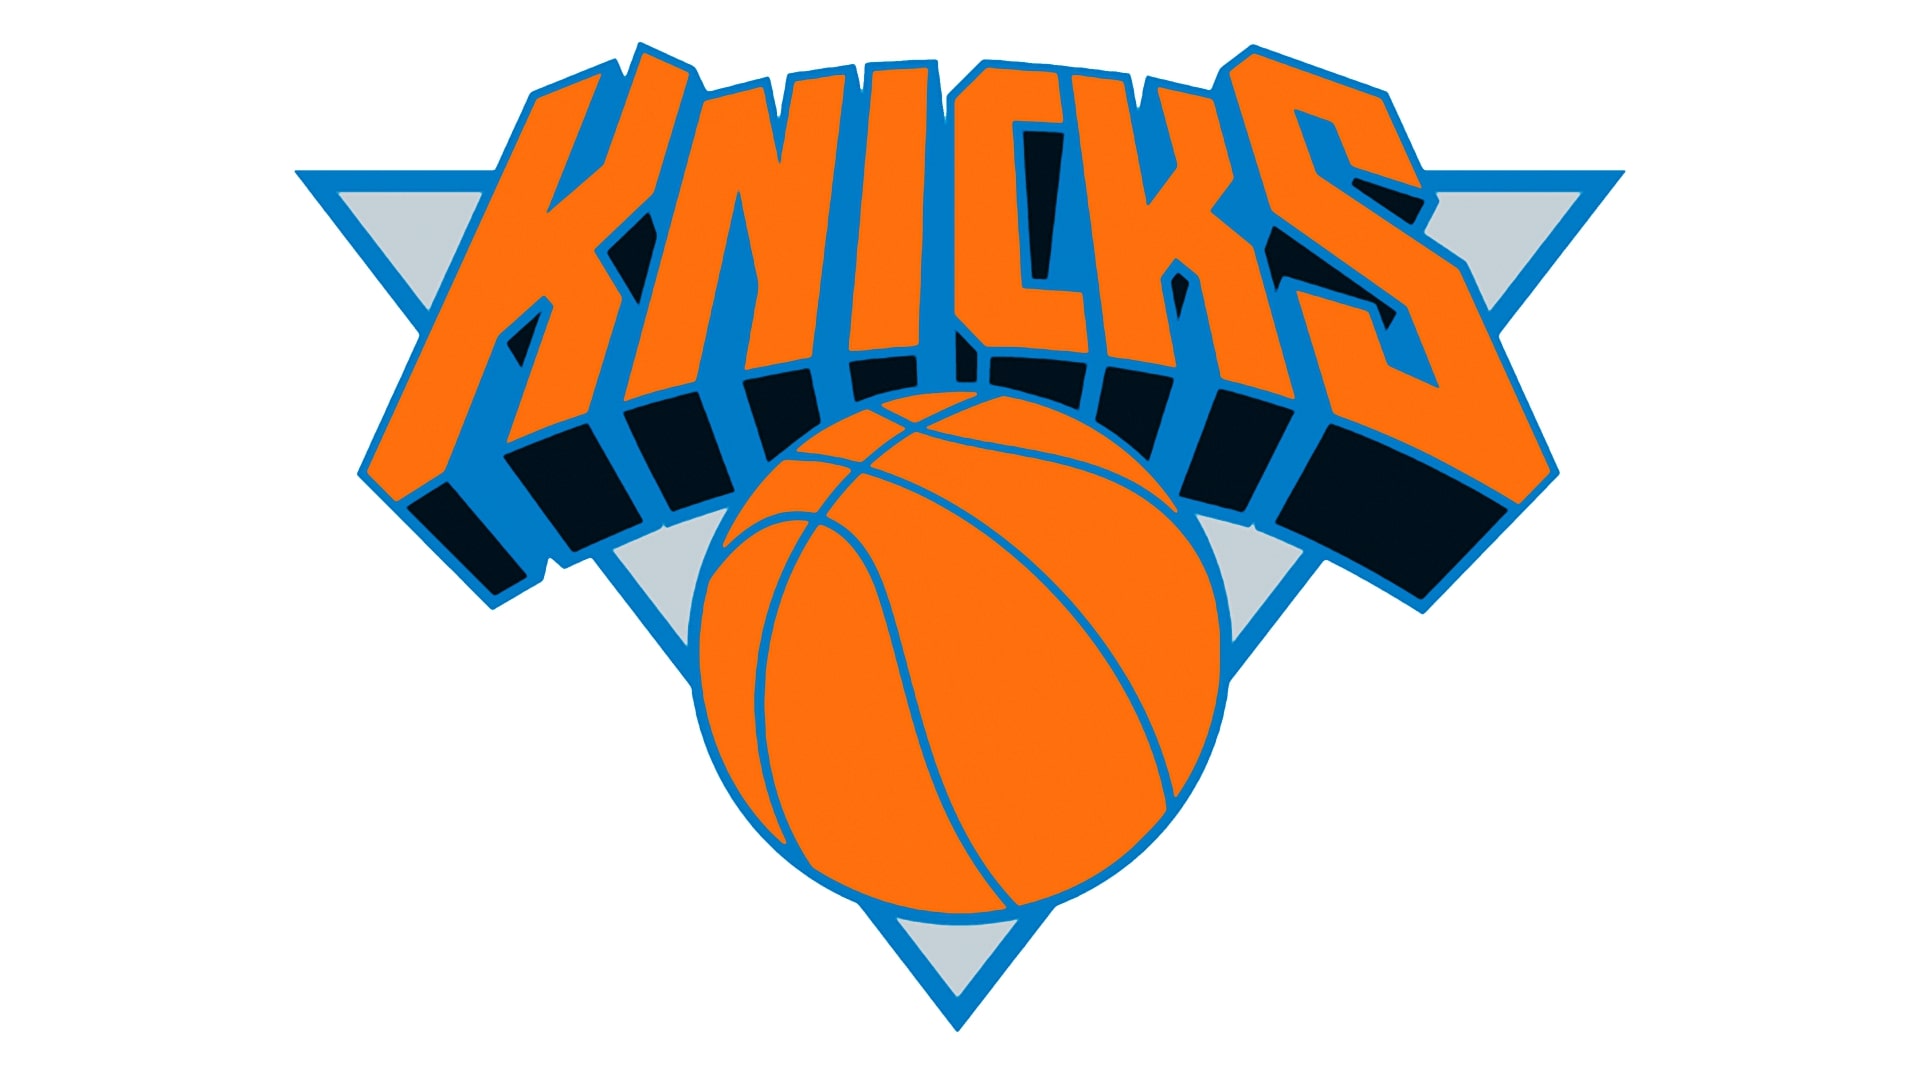 New York Knicks Logo | Significado, História e PNG